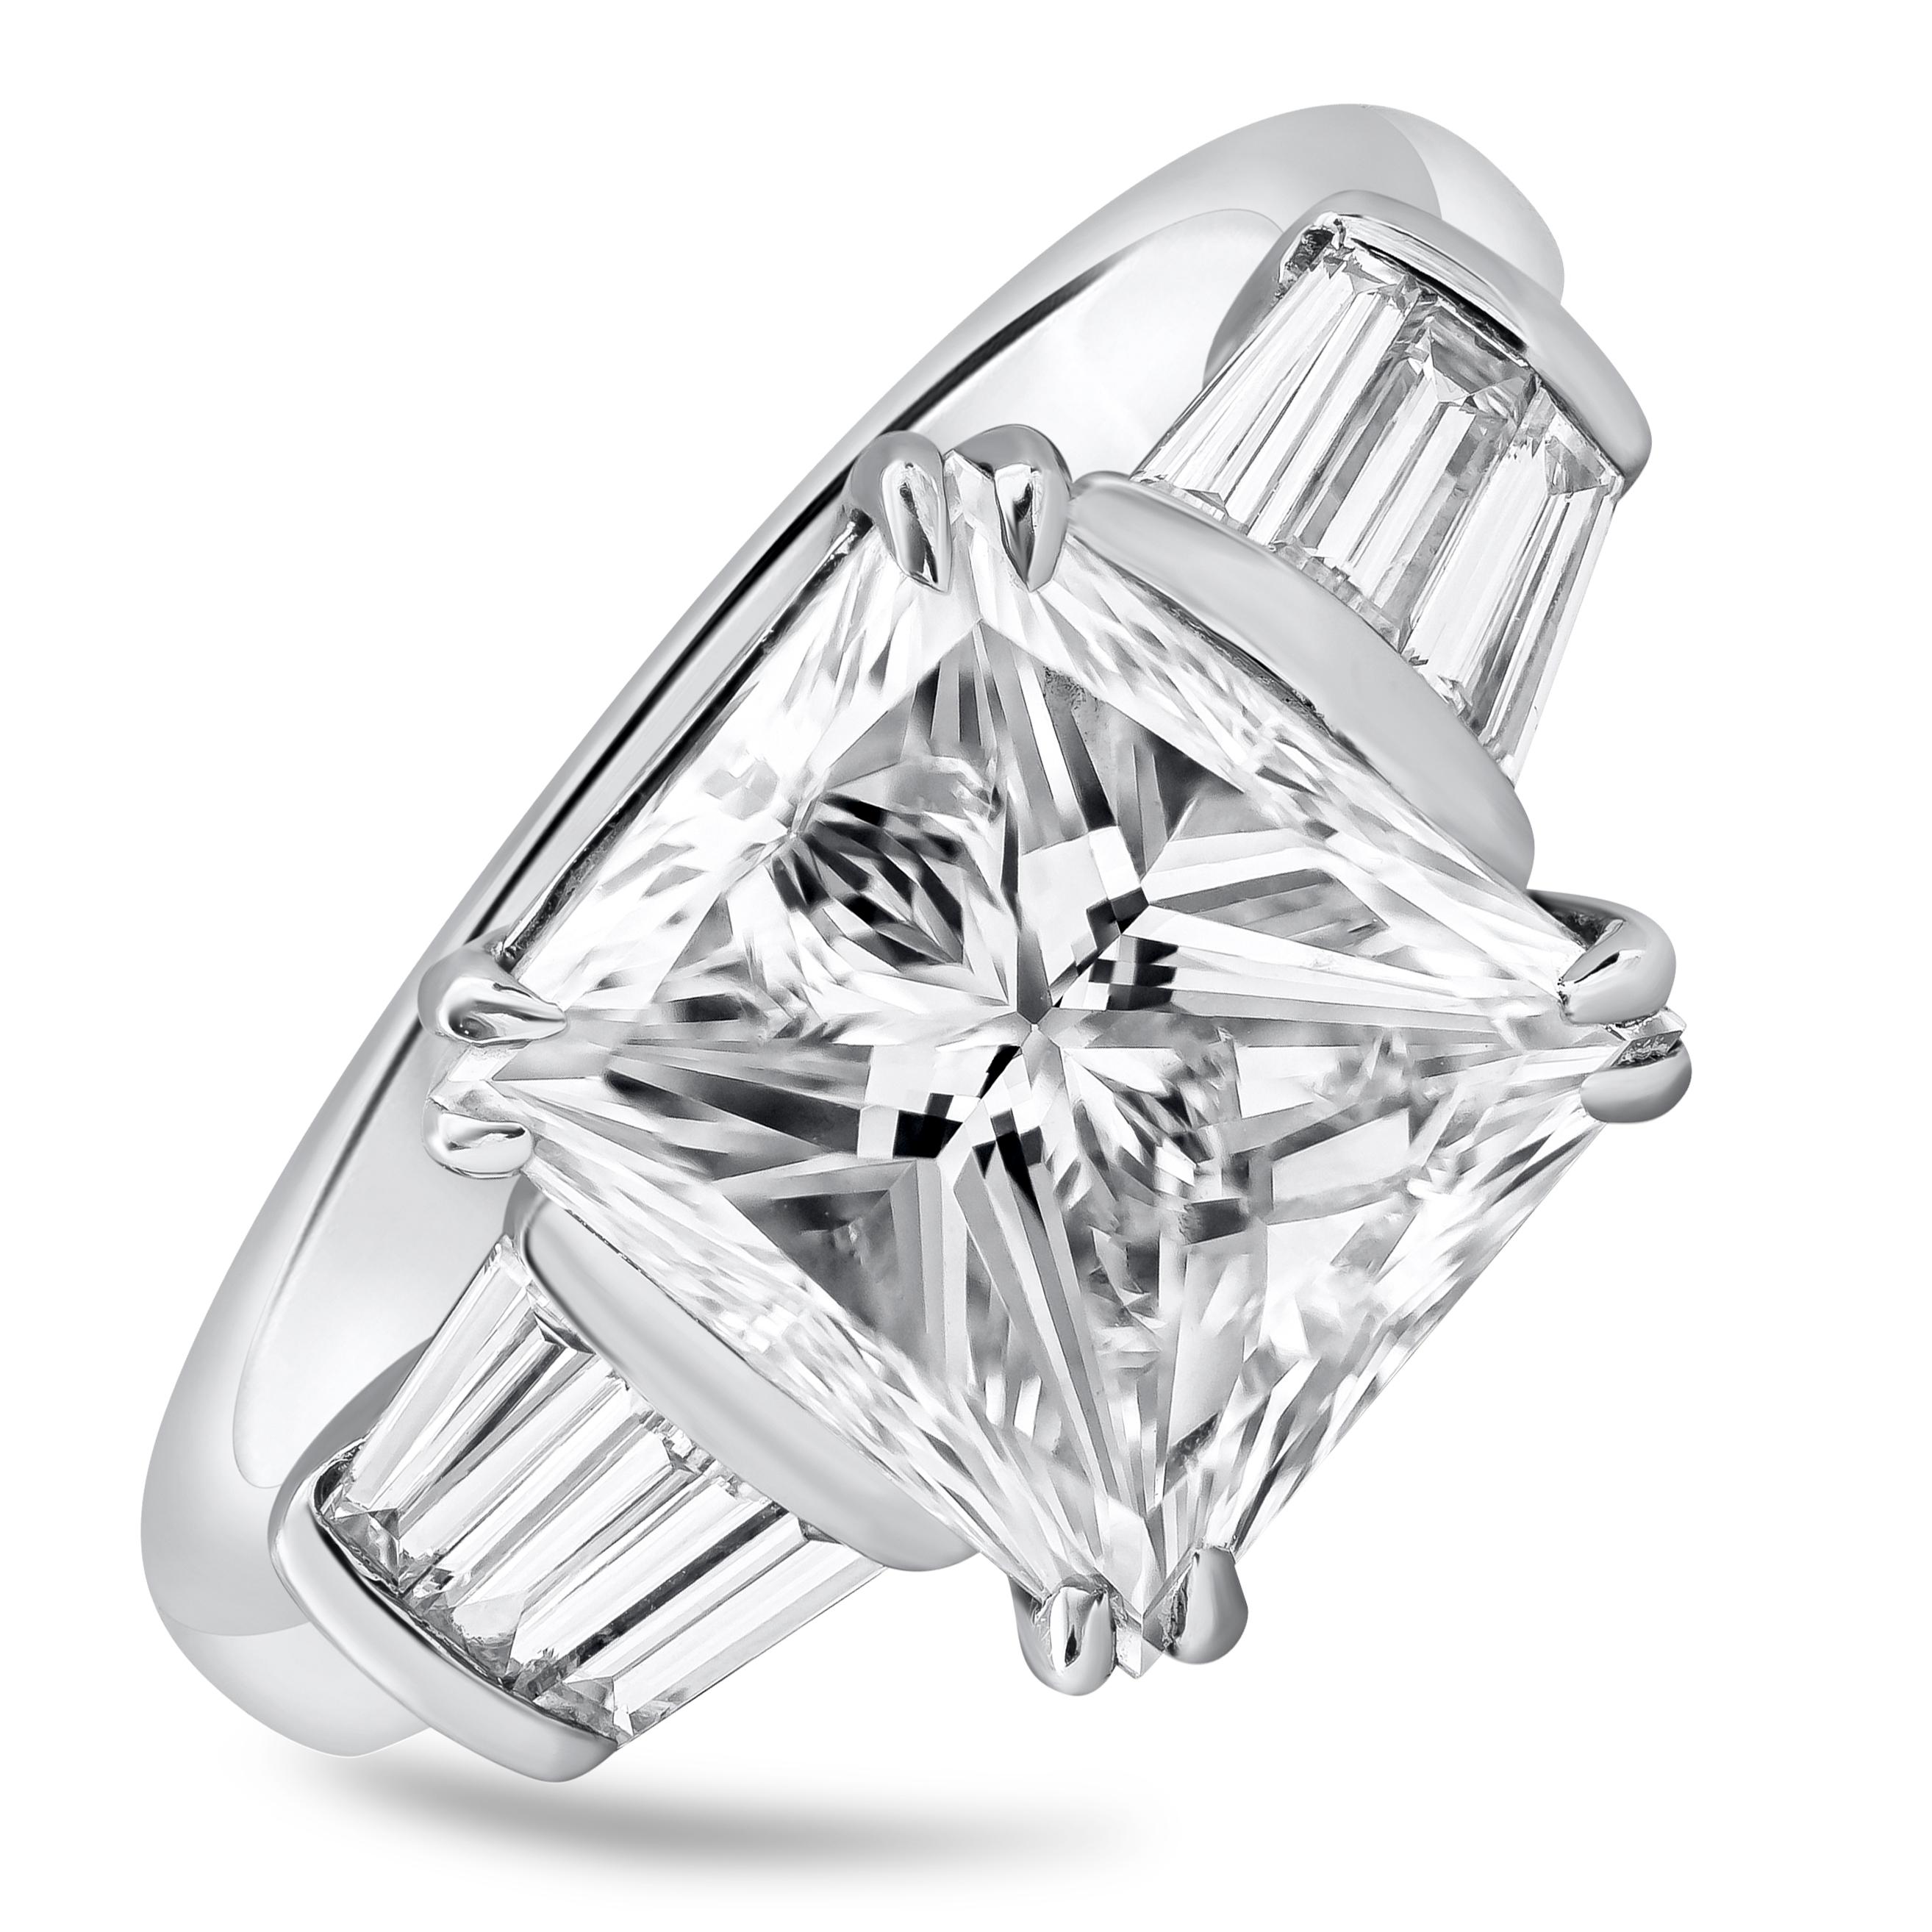 Ein einzigartiger, klassischer Verlobungsring mit einem 5,03 Karat schweren Diamanten im Prinzessinnenschliff, der von GIA mit der Farbe G und der Reinheit VS2 zertifiziert wurde. Drei perfekt aufeinander abgestimmte, spitz zulaufende